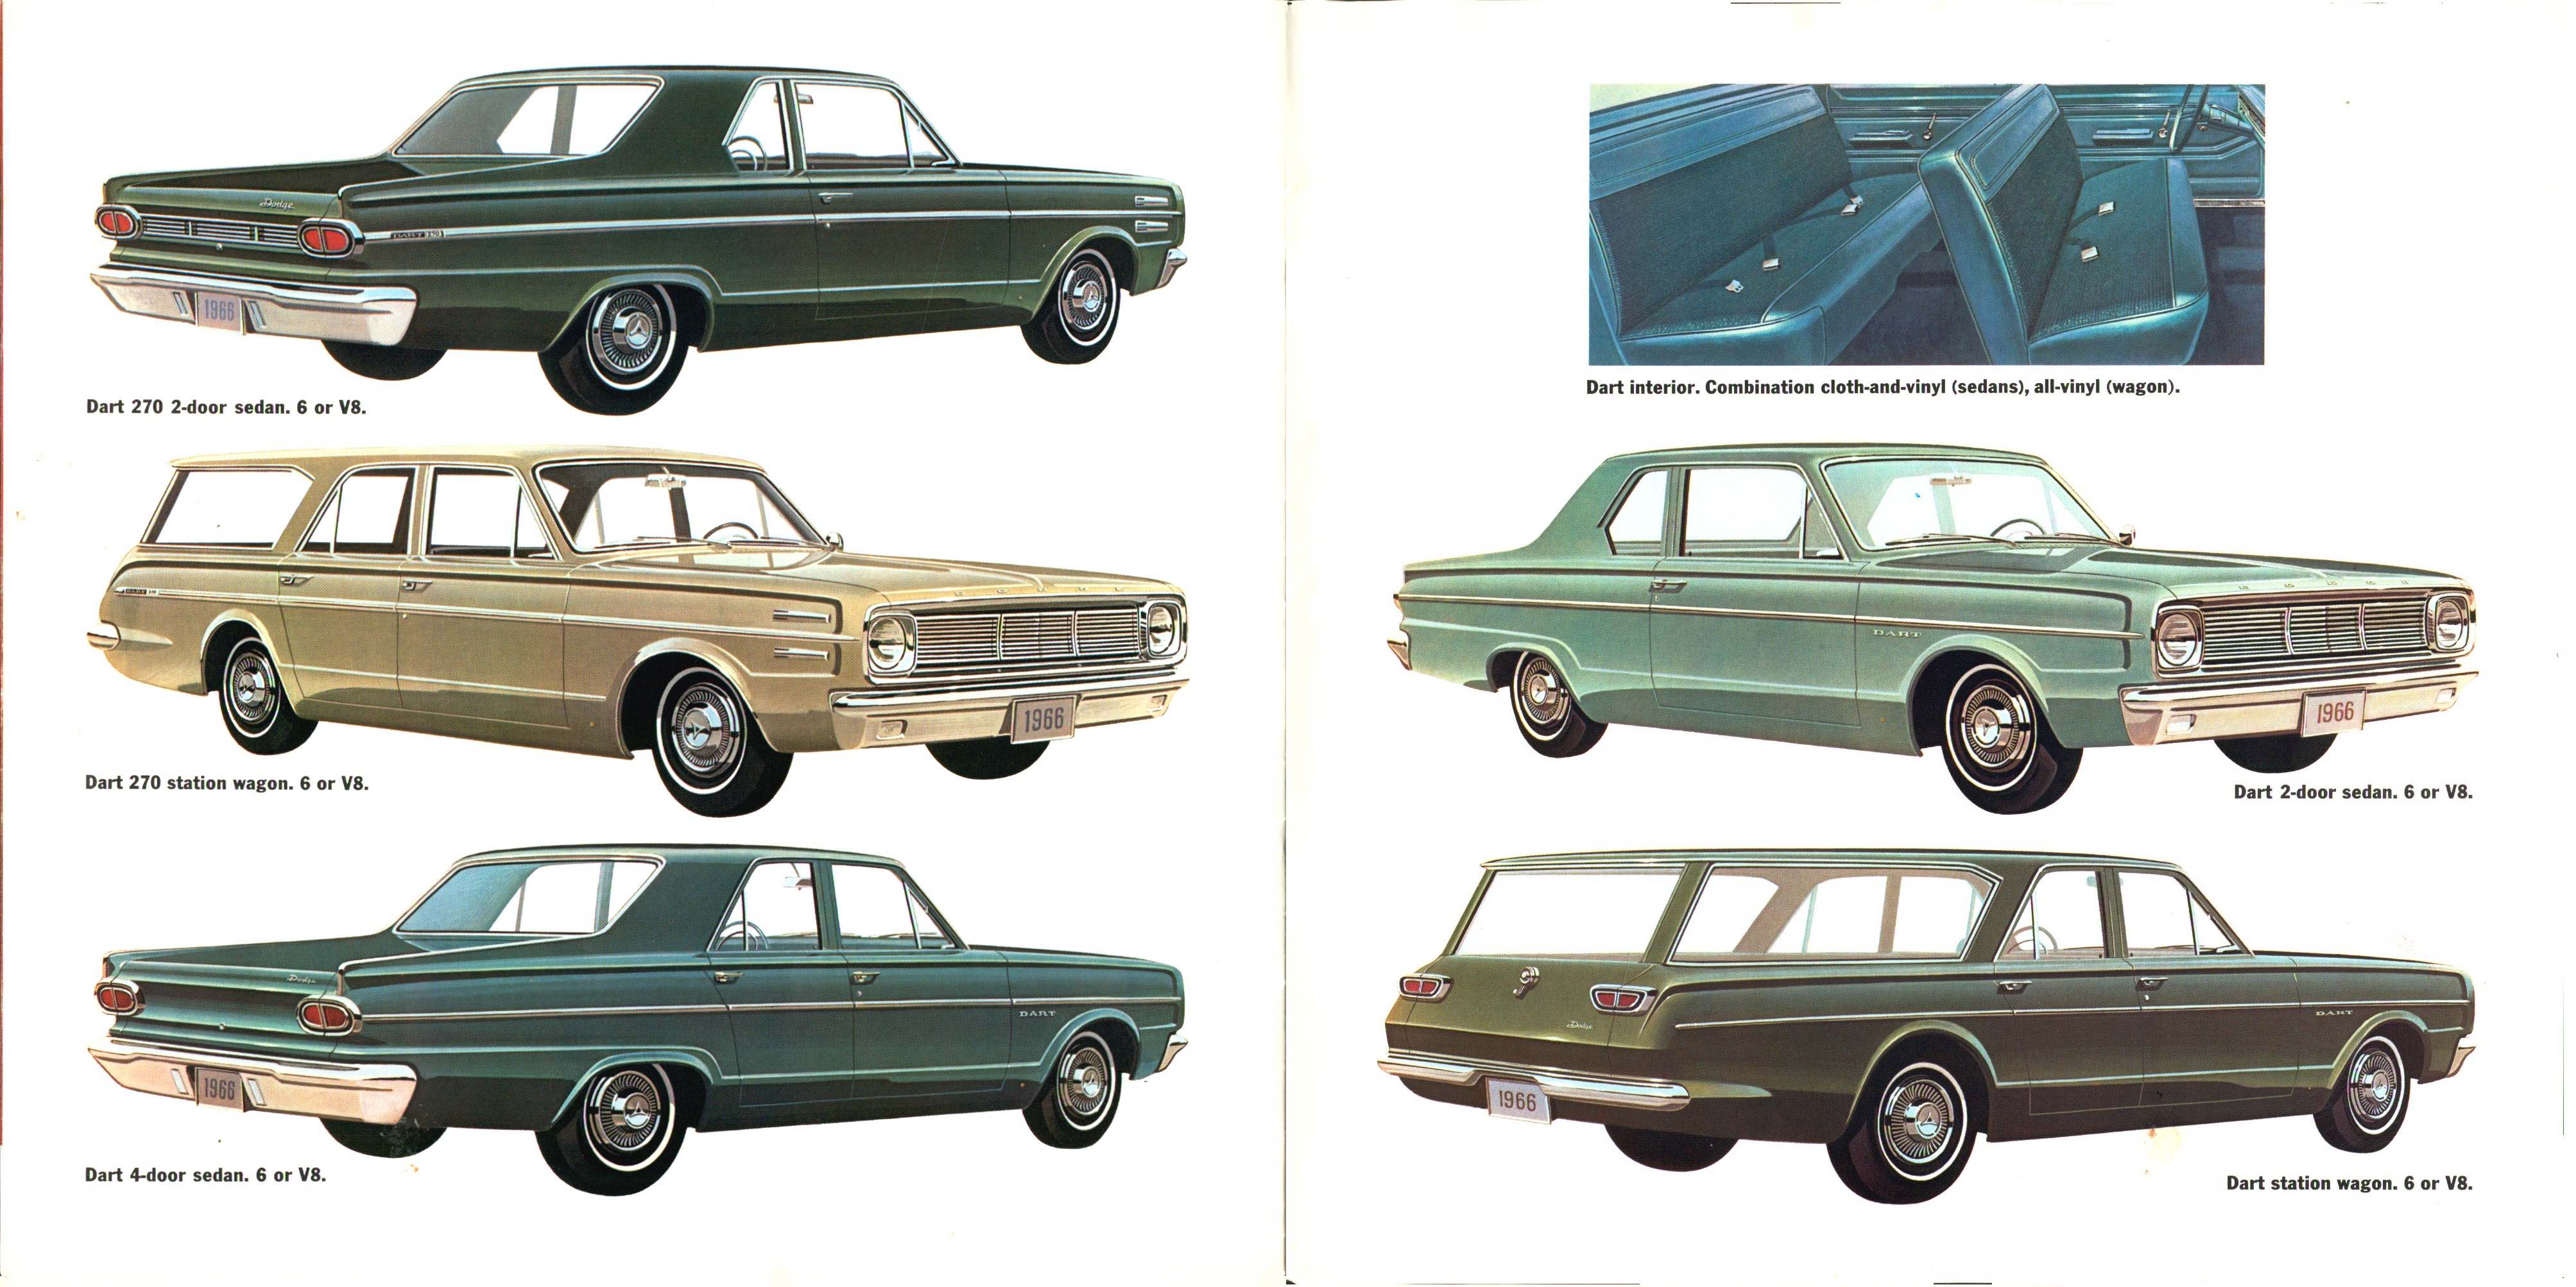 1966 Dodge Dart Brochure 14-15